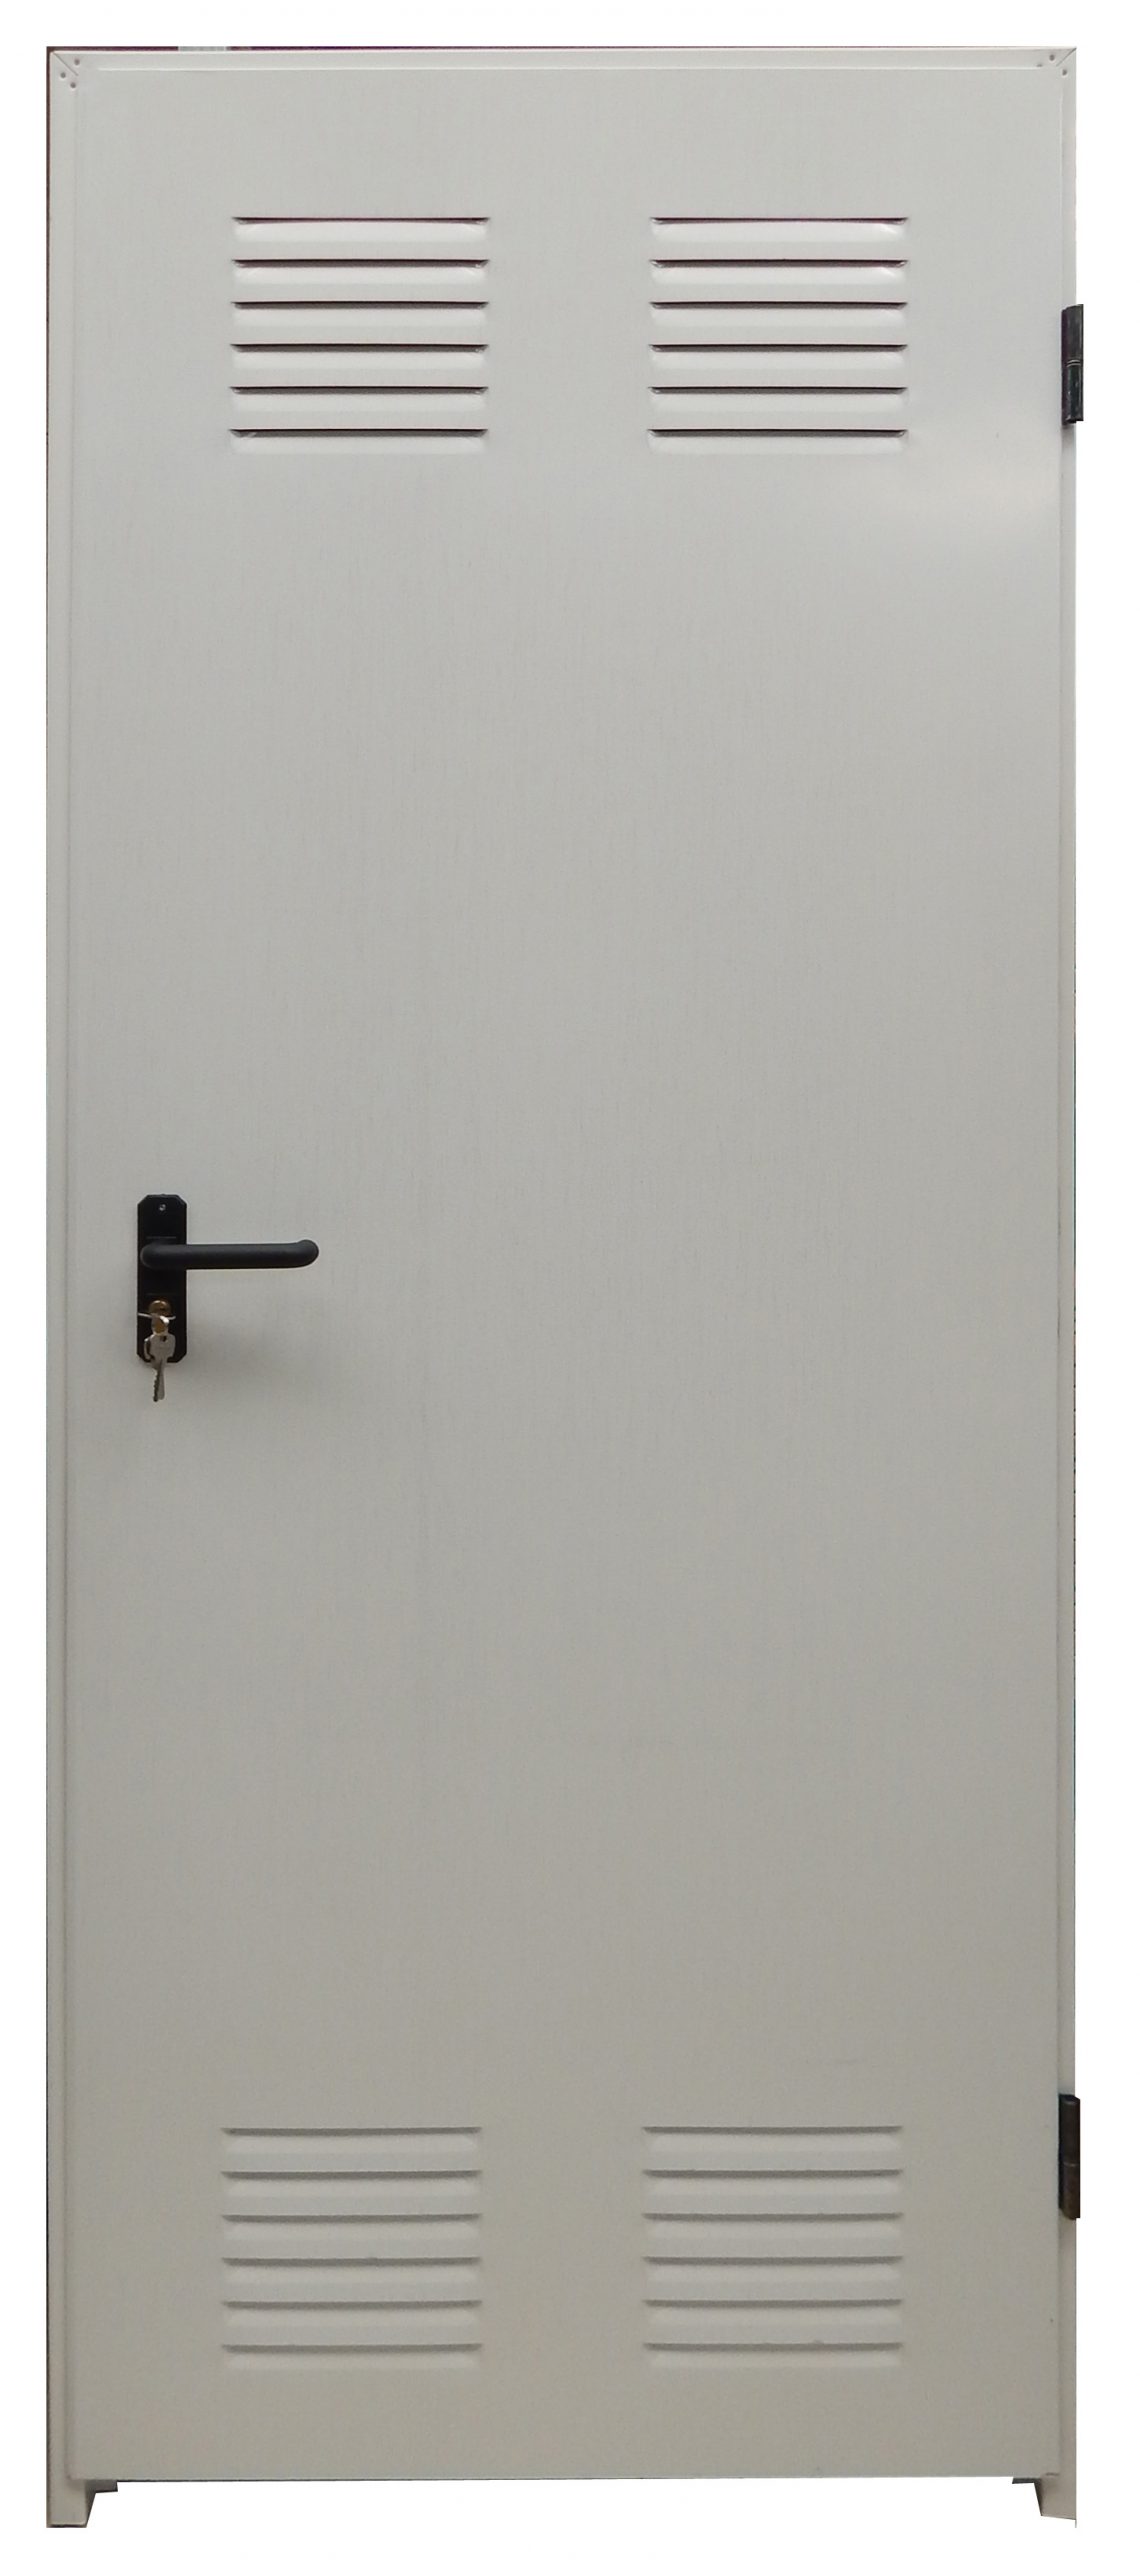 Puerta ensamblada blanca con rejilla de ventilación por 75€